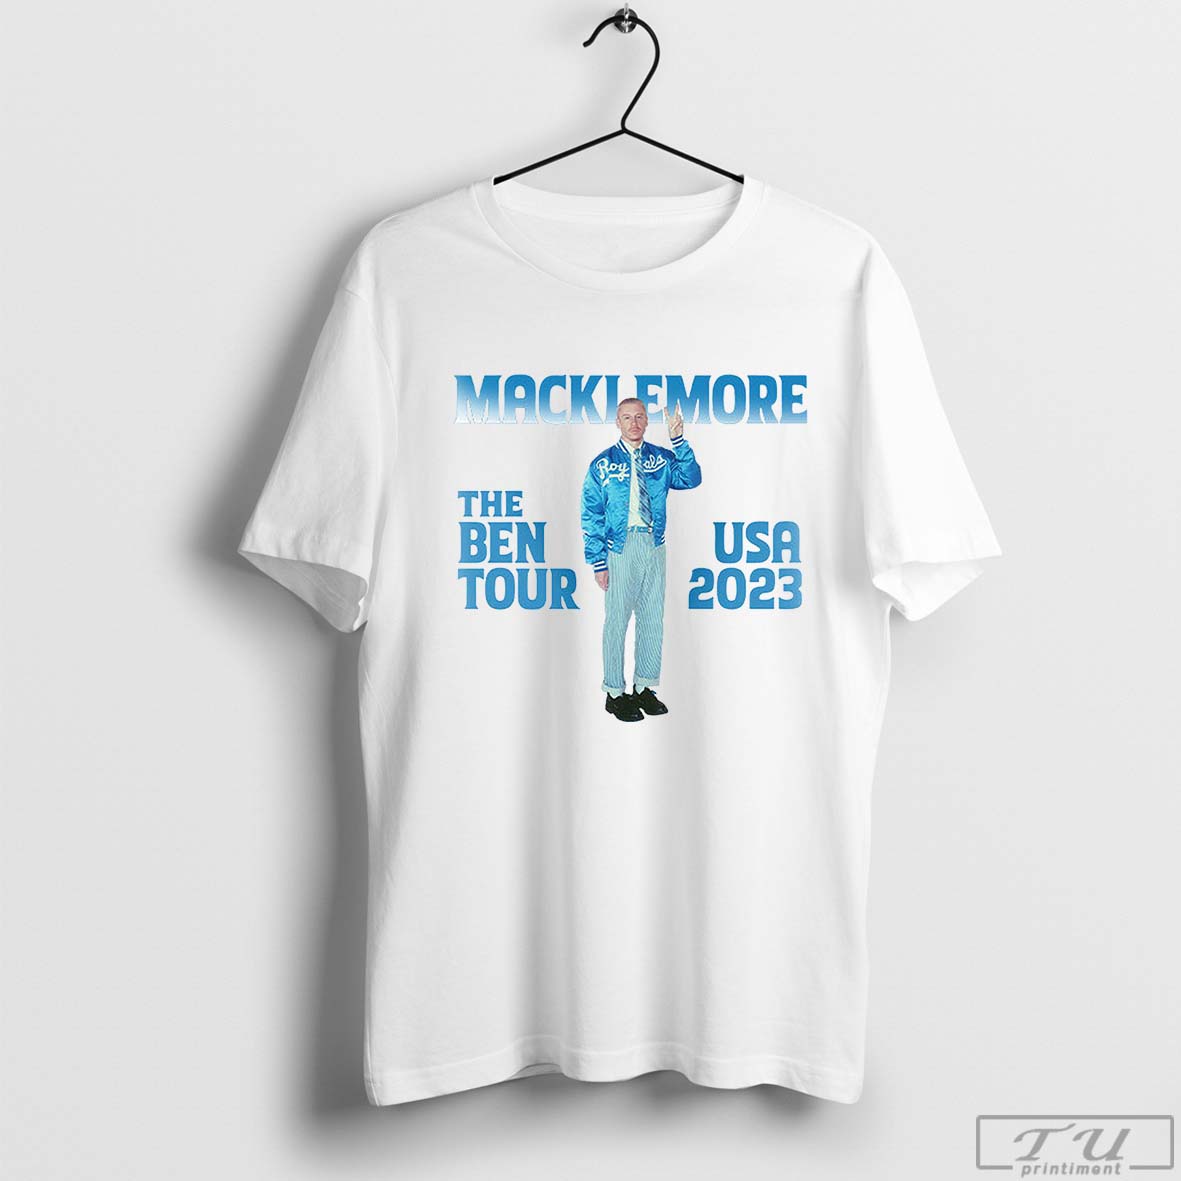 macklemore tour shirt